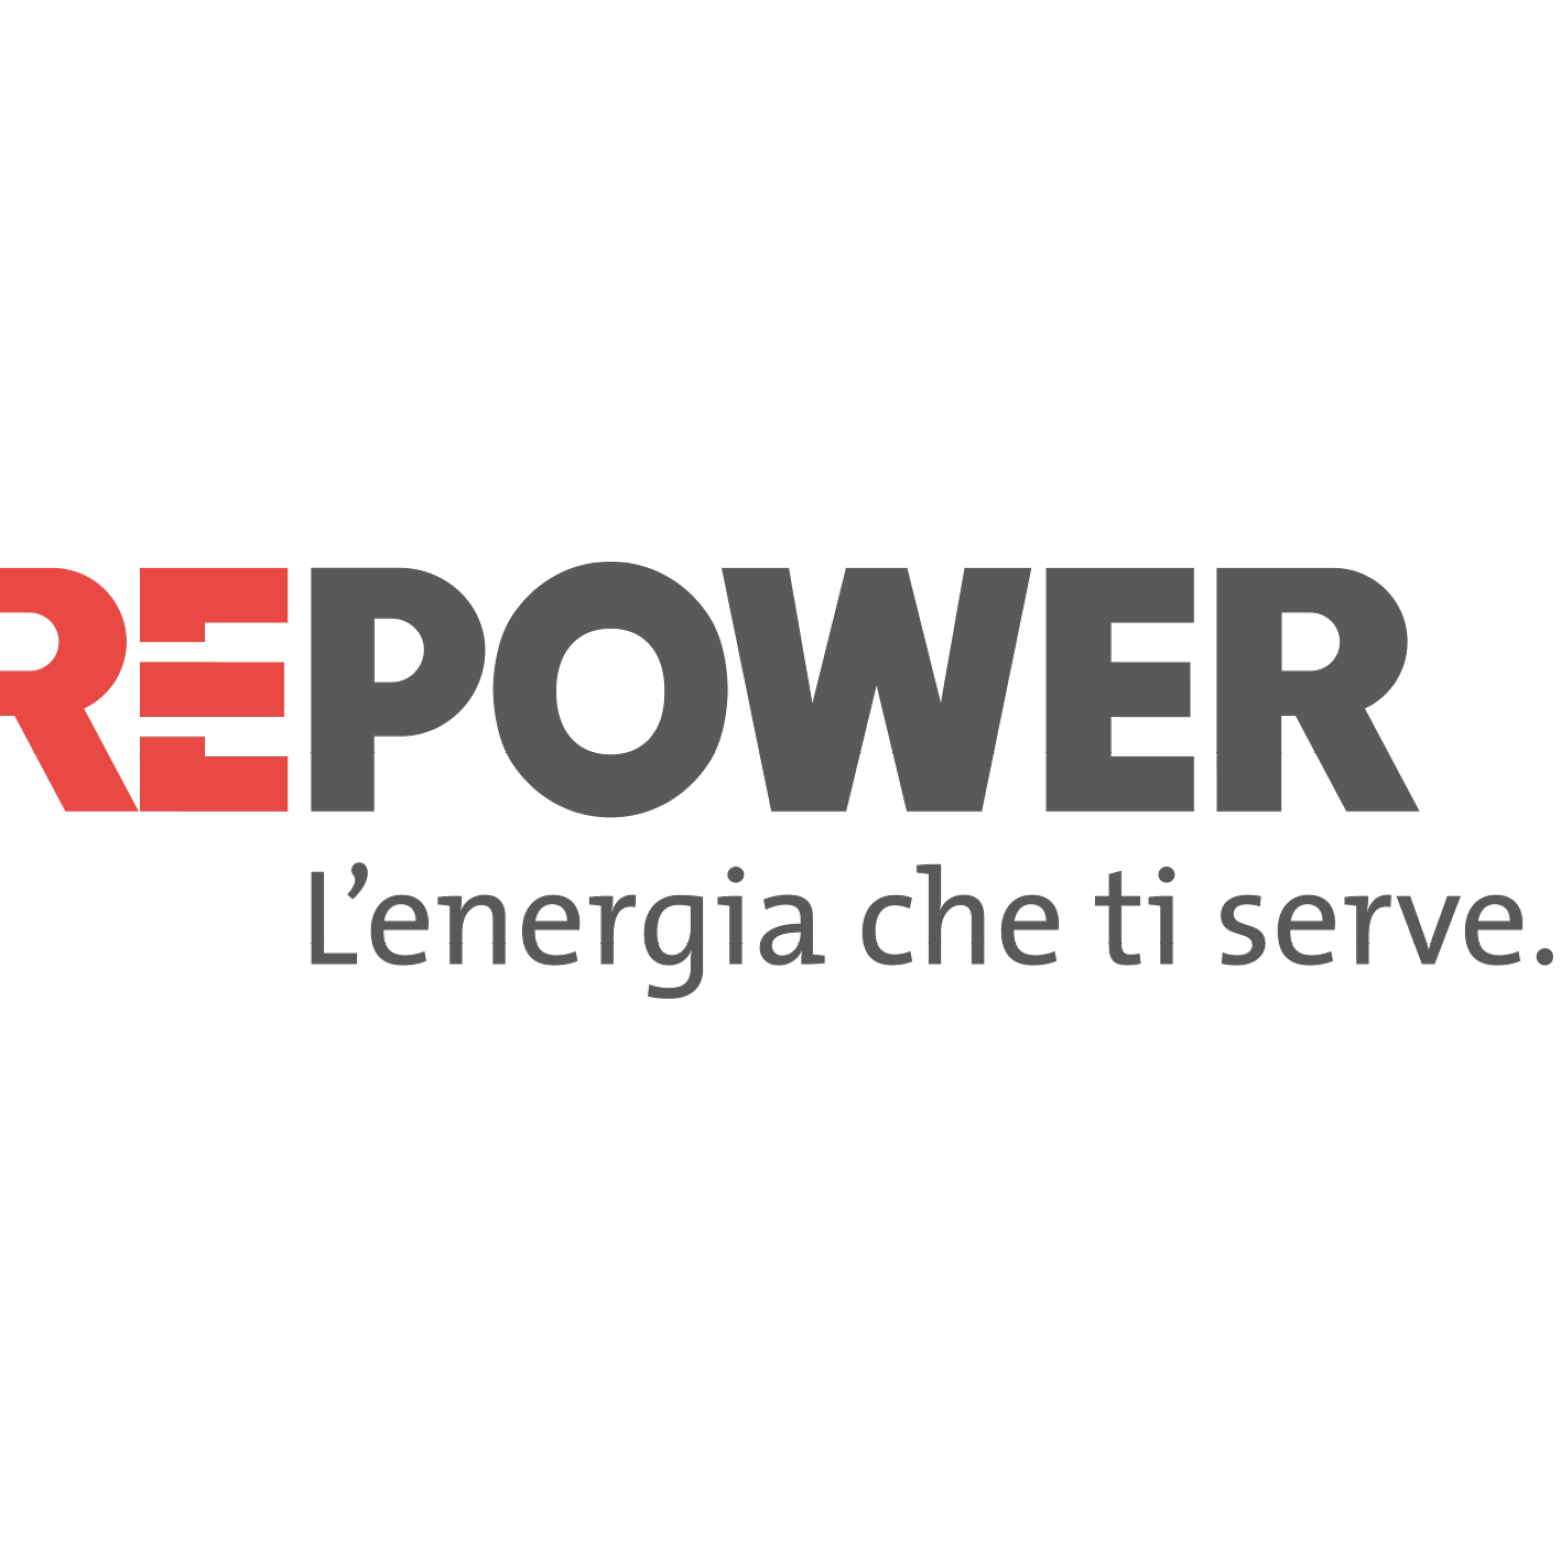 Repower